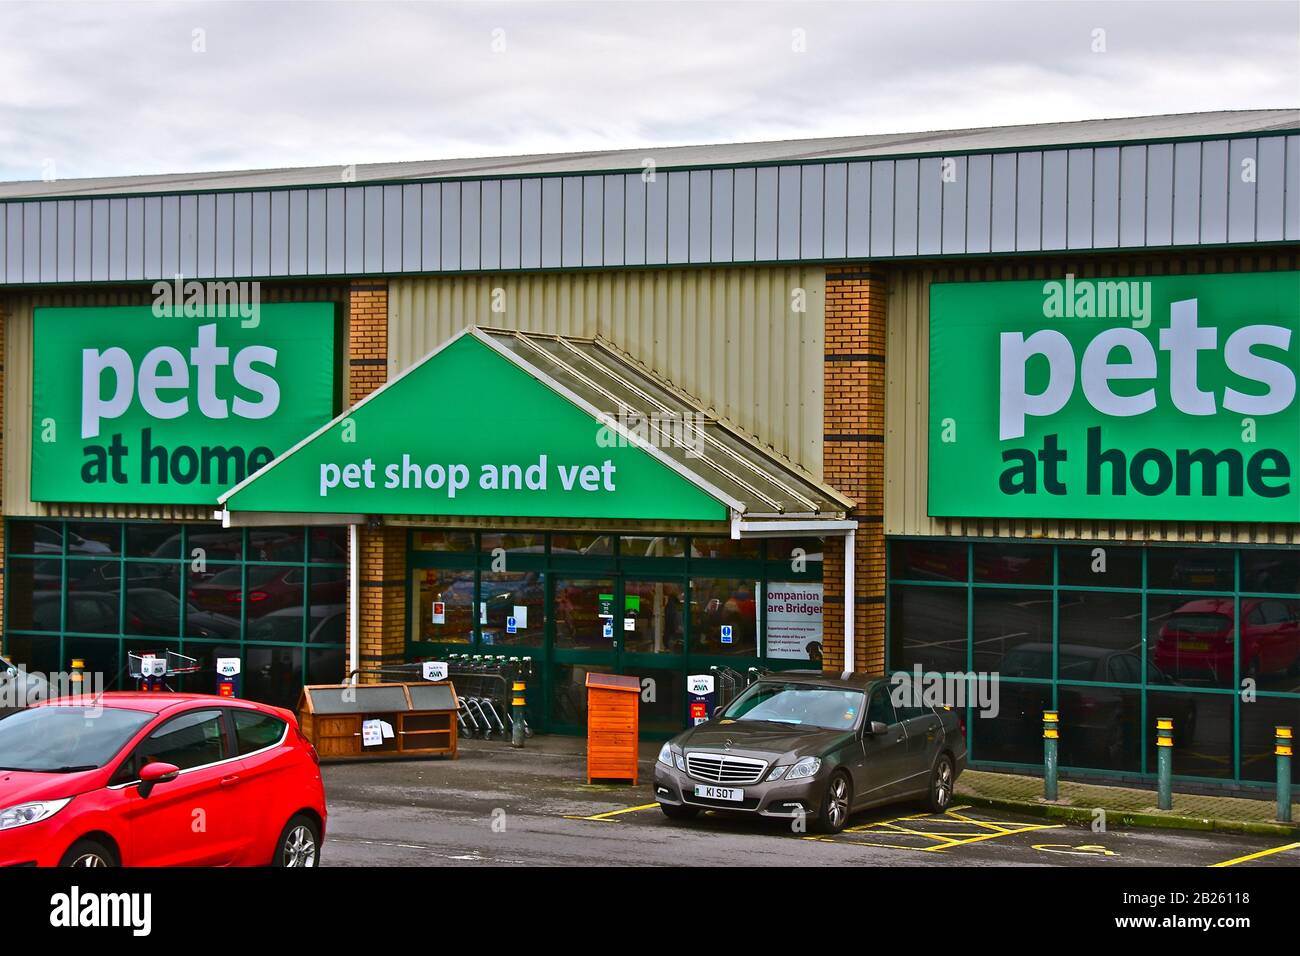 Il negozio Pets at Home di Bridgend Retail Park, vende una vasta gamma di prodotti per animali domestici e contiene anche un servizio veterinario. Foto Stock